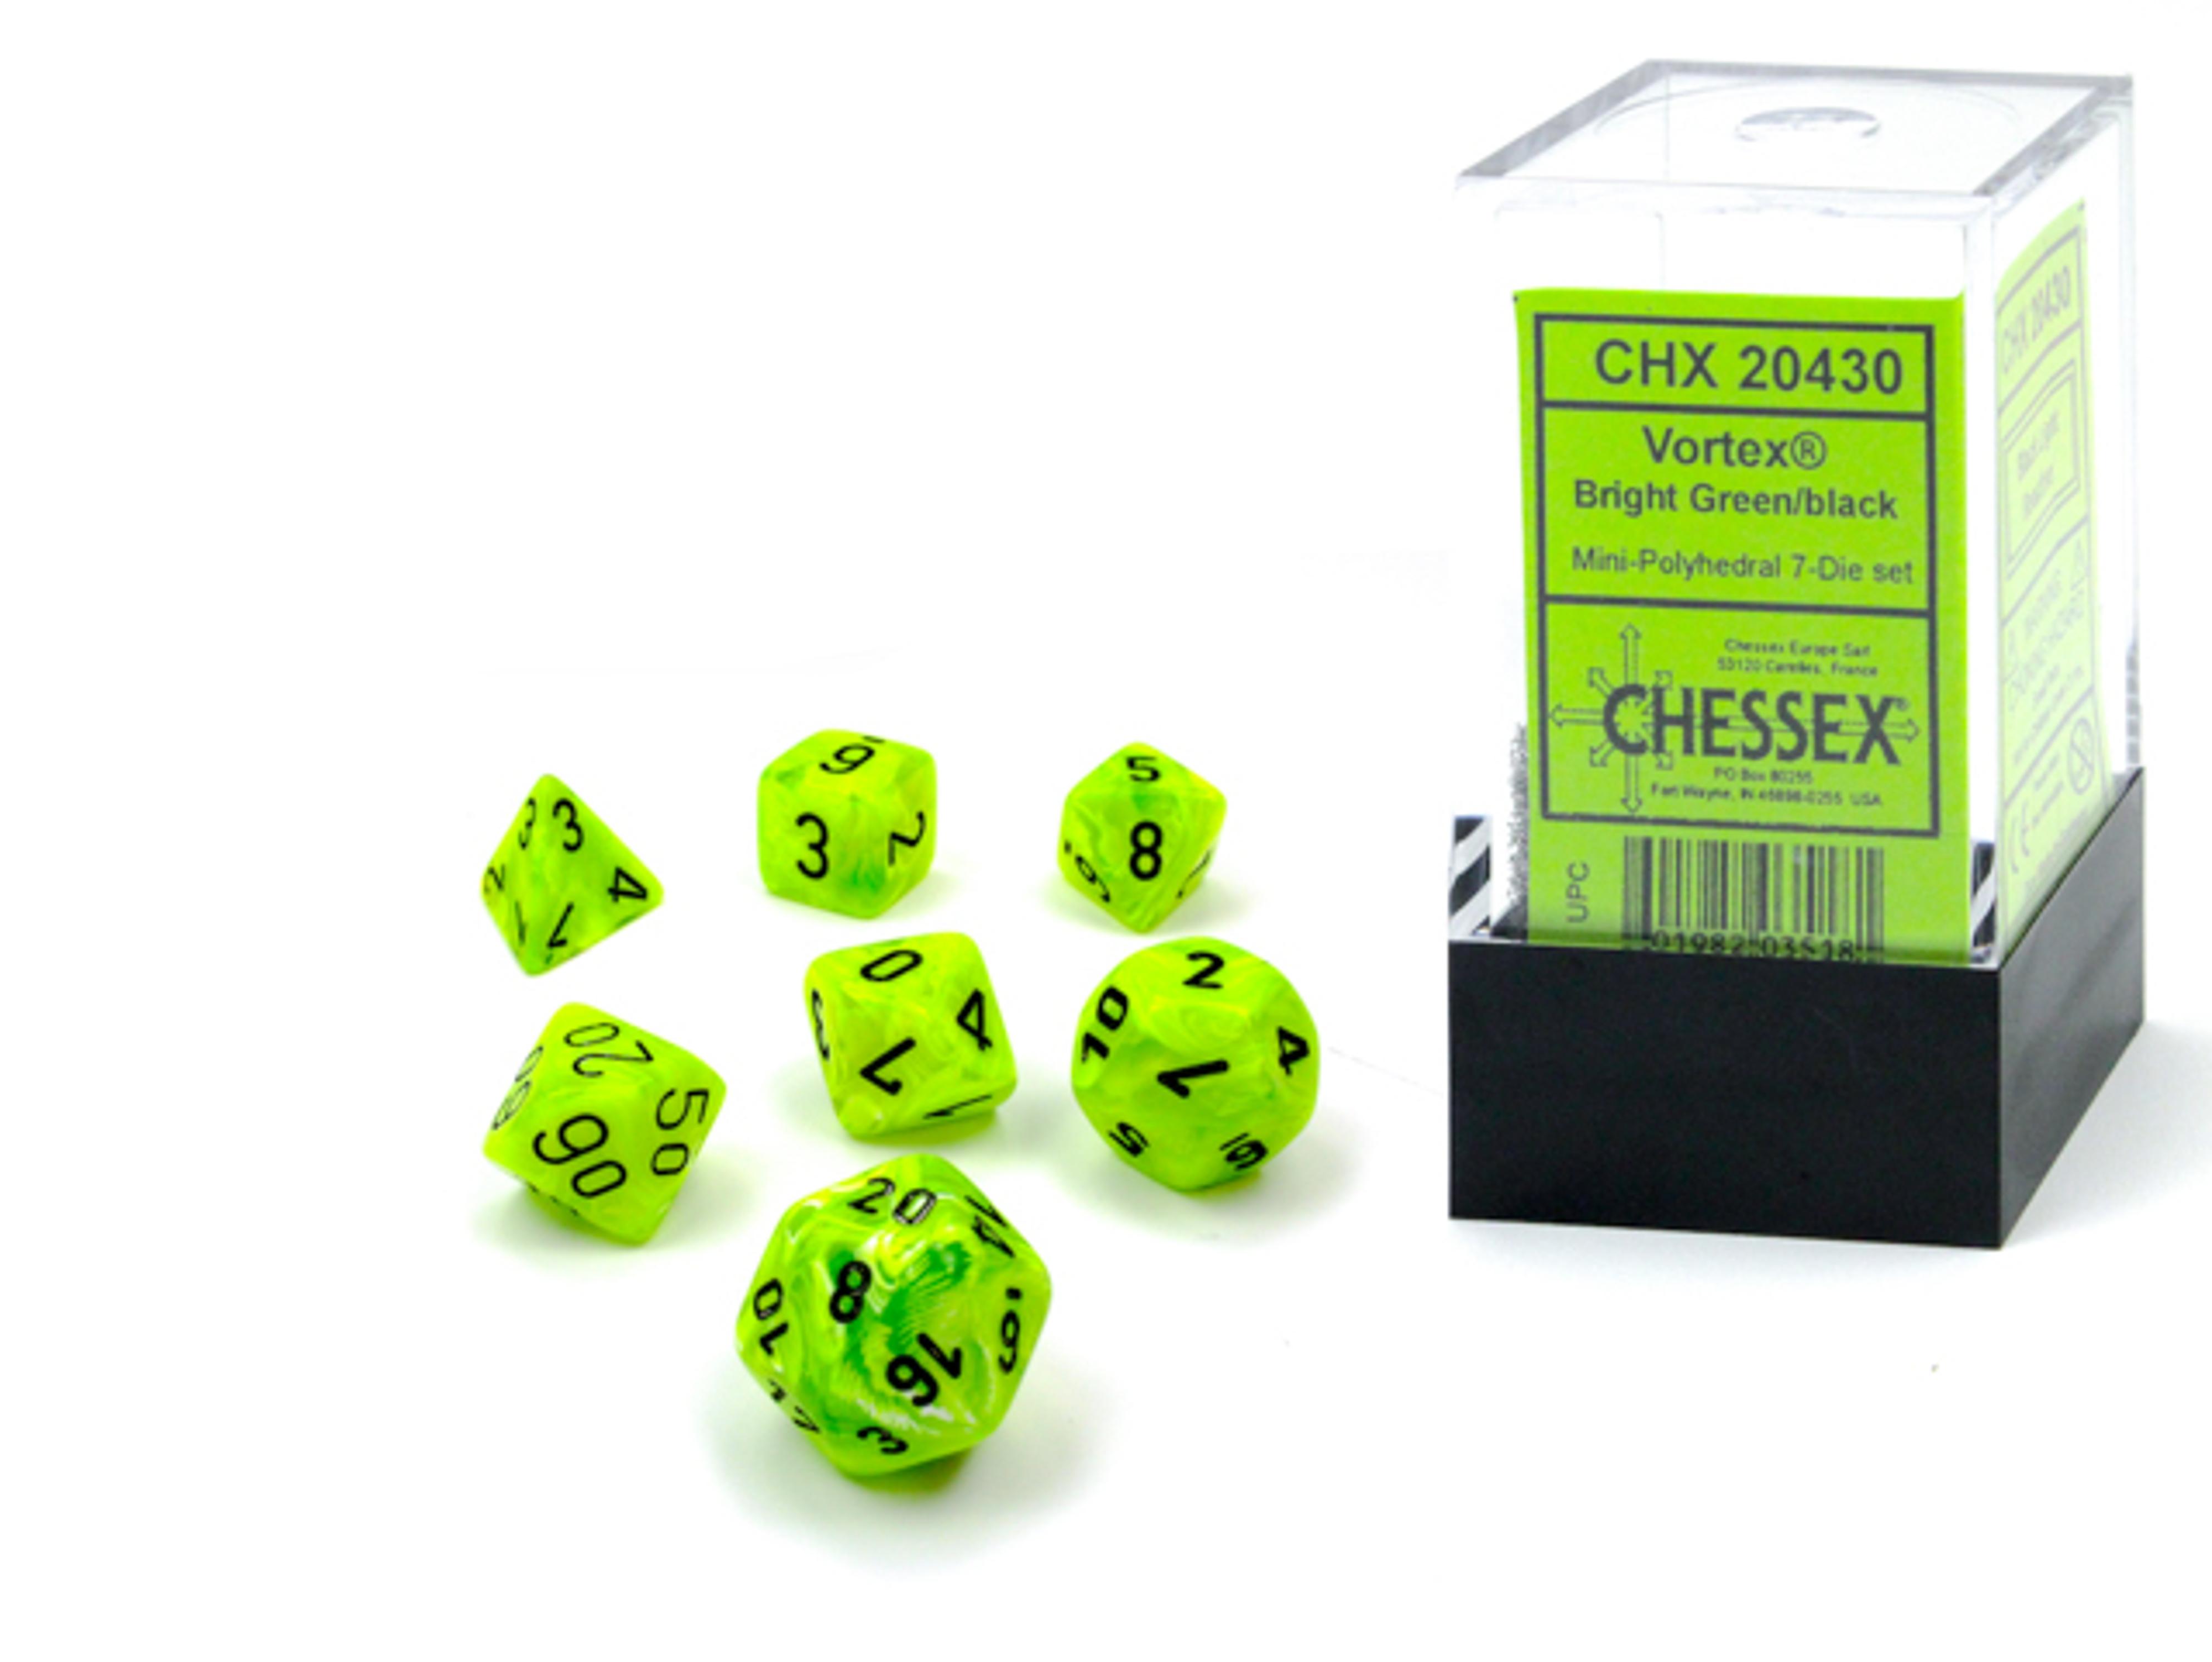 Chessex Vortex Mini Polyhedral Bright Green/Black 7 Die Set